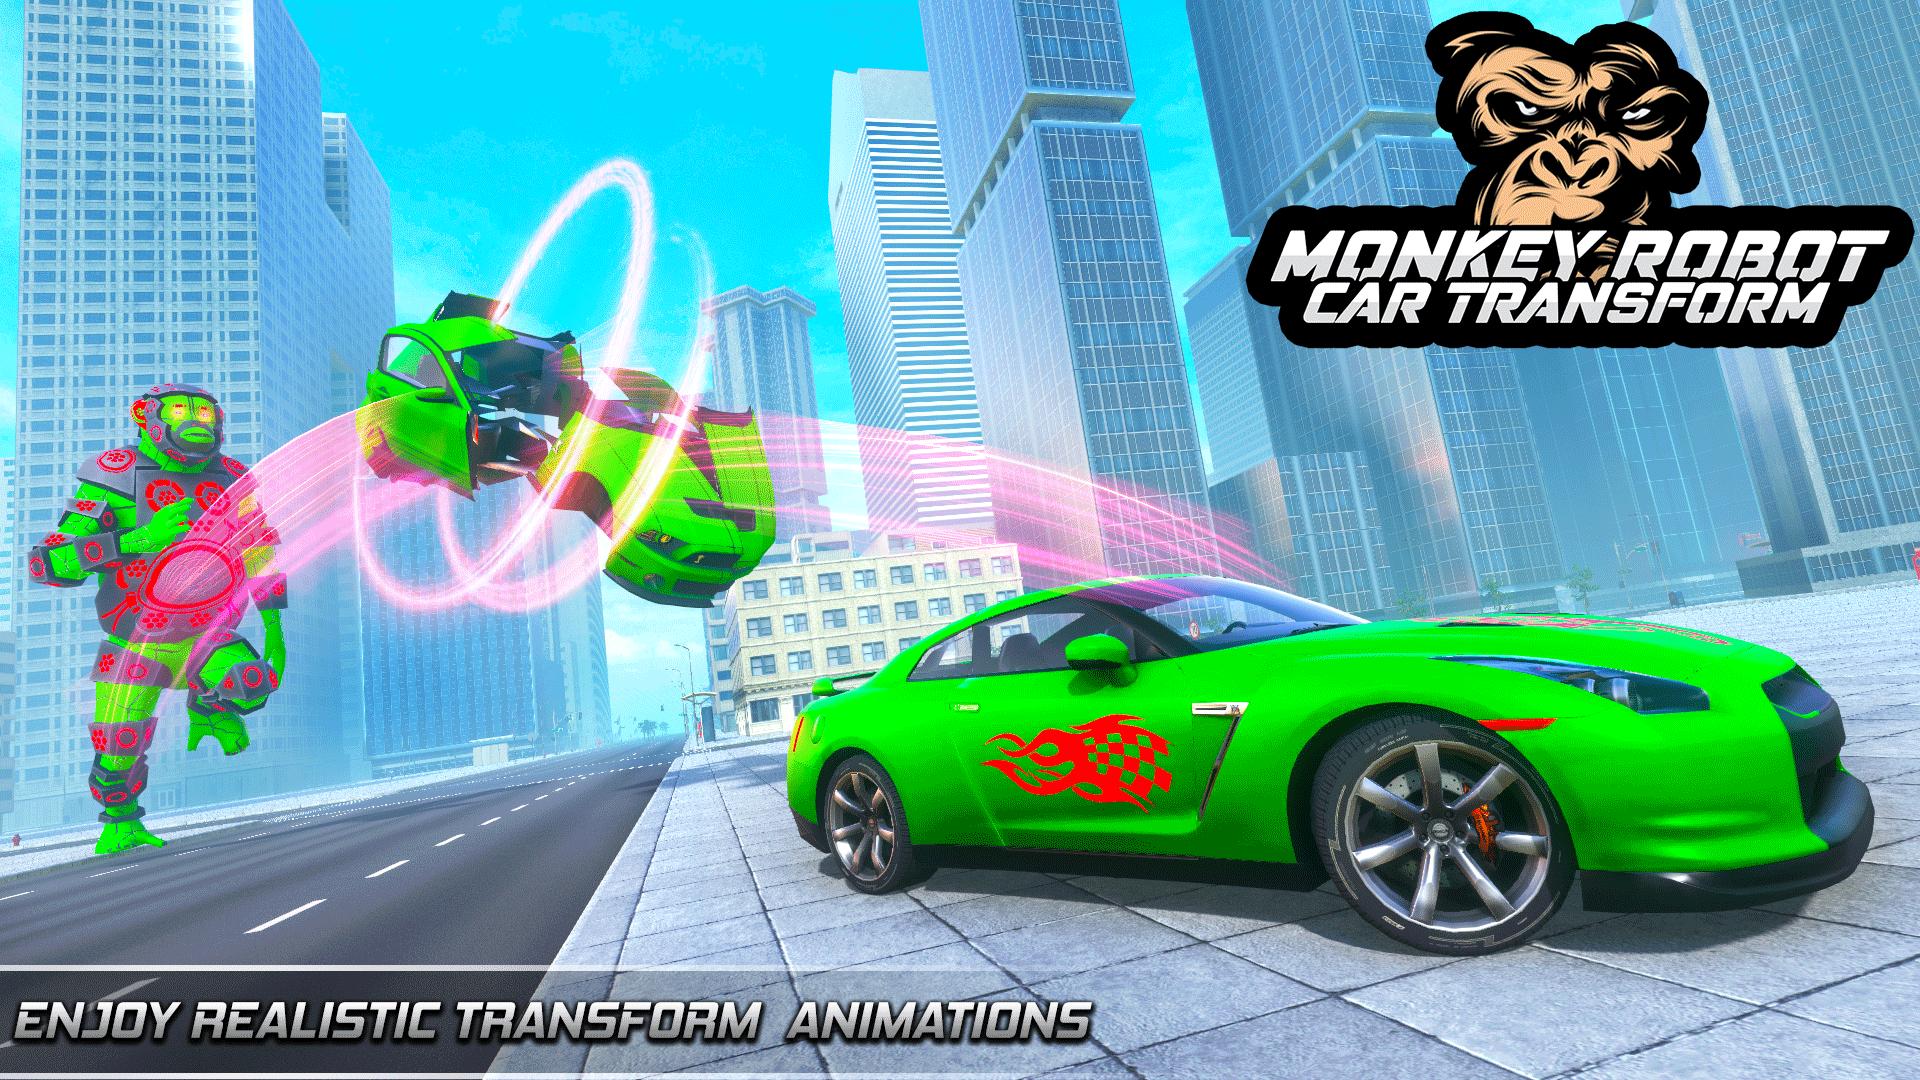 Monkey Robot Game - Robot Car Transforming